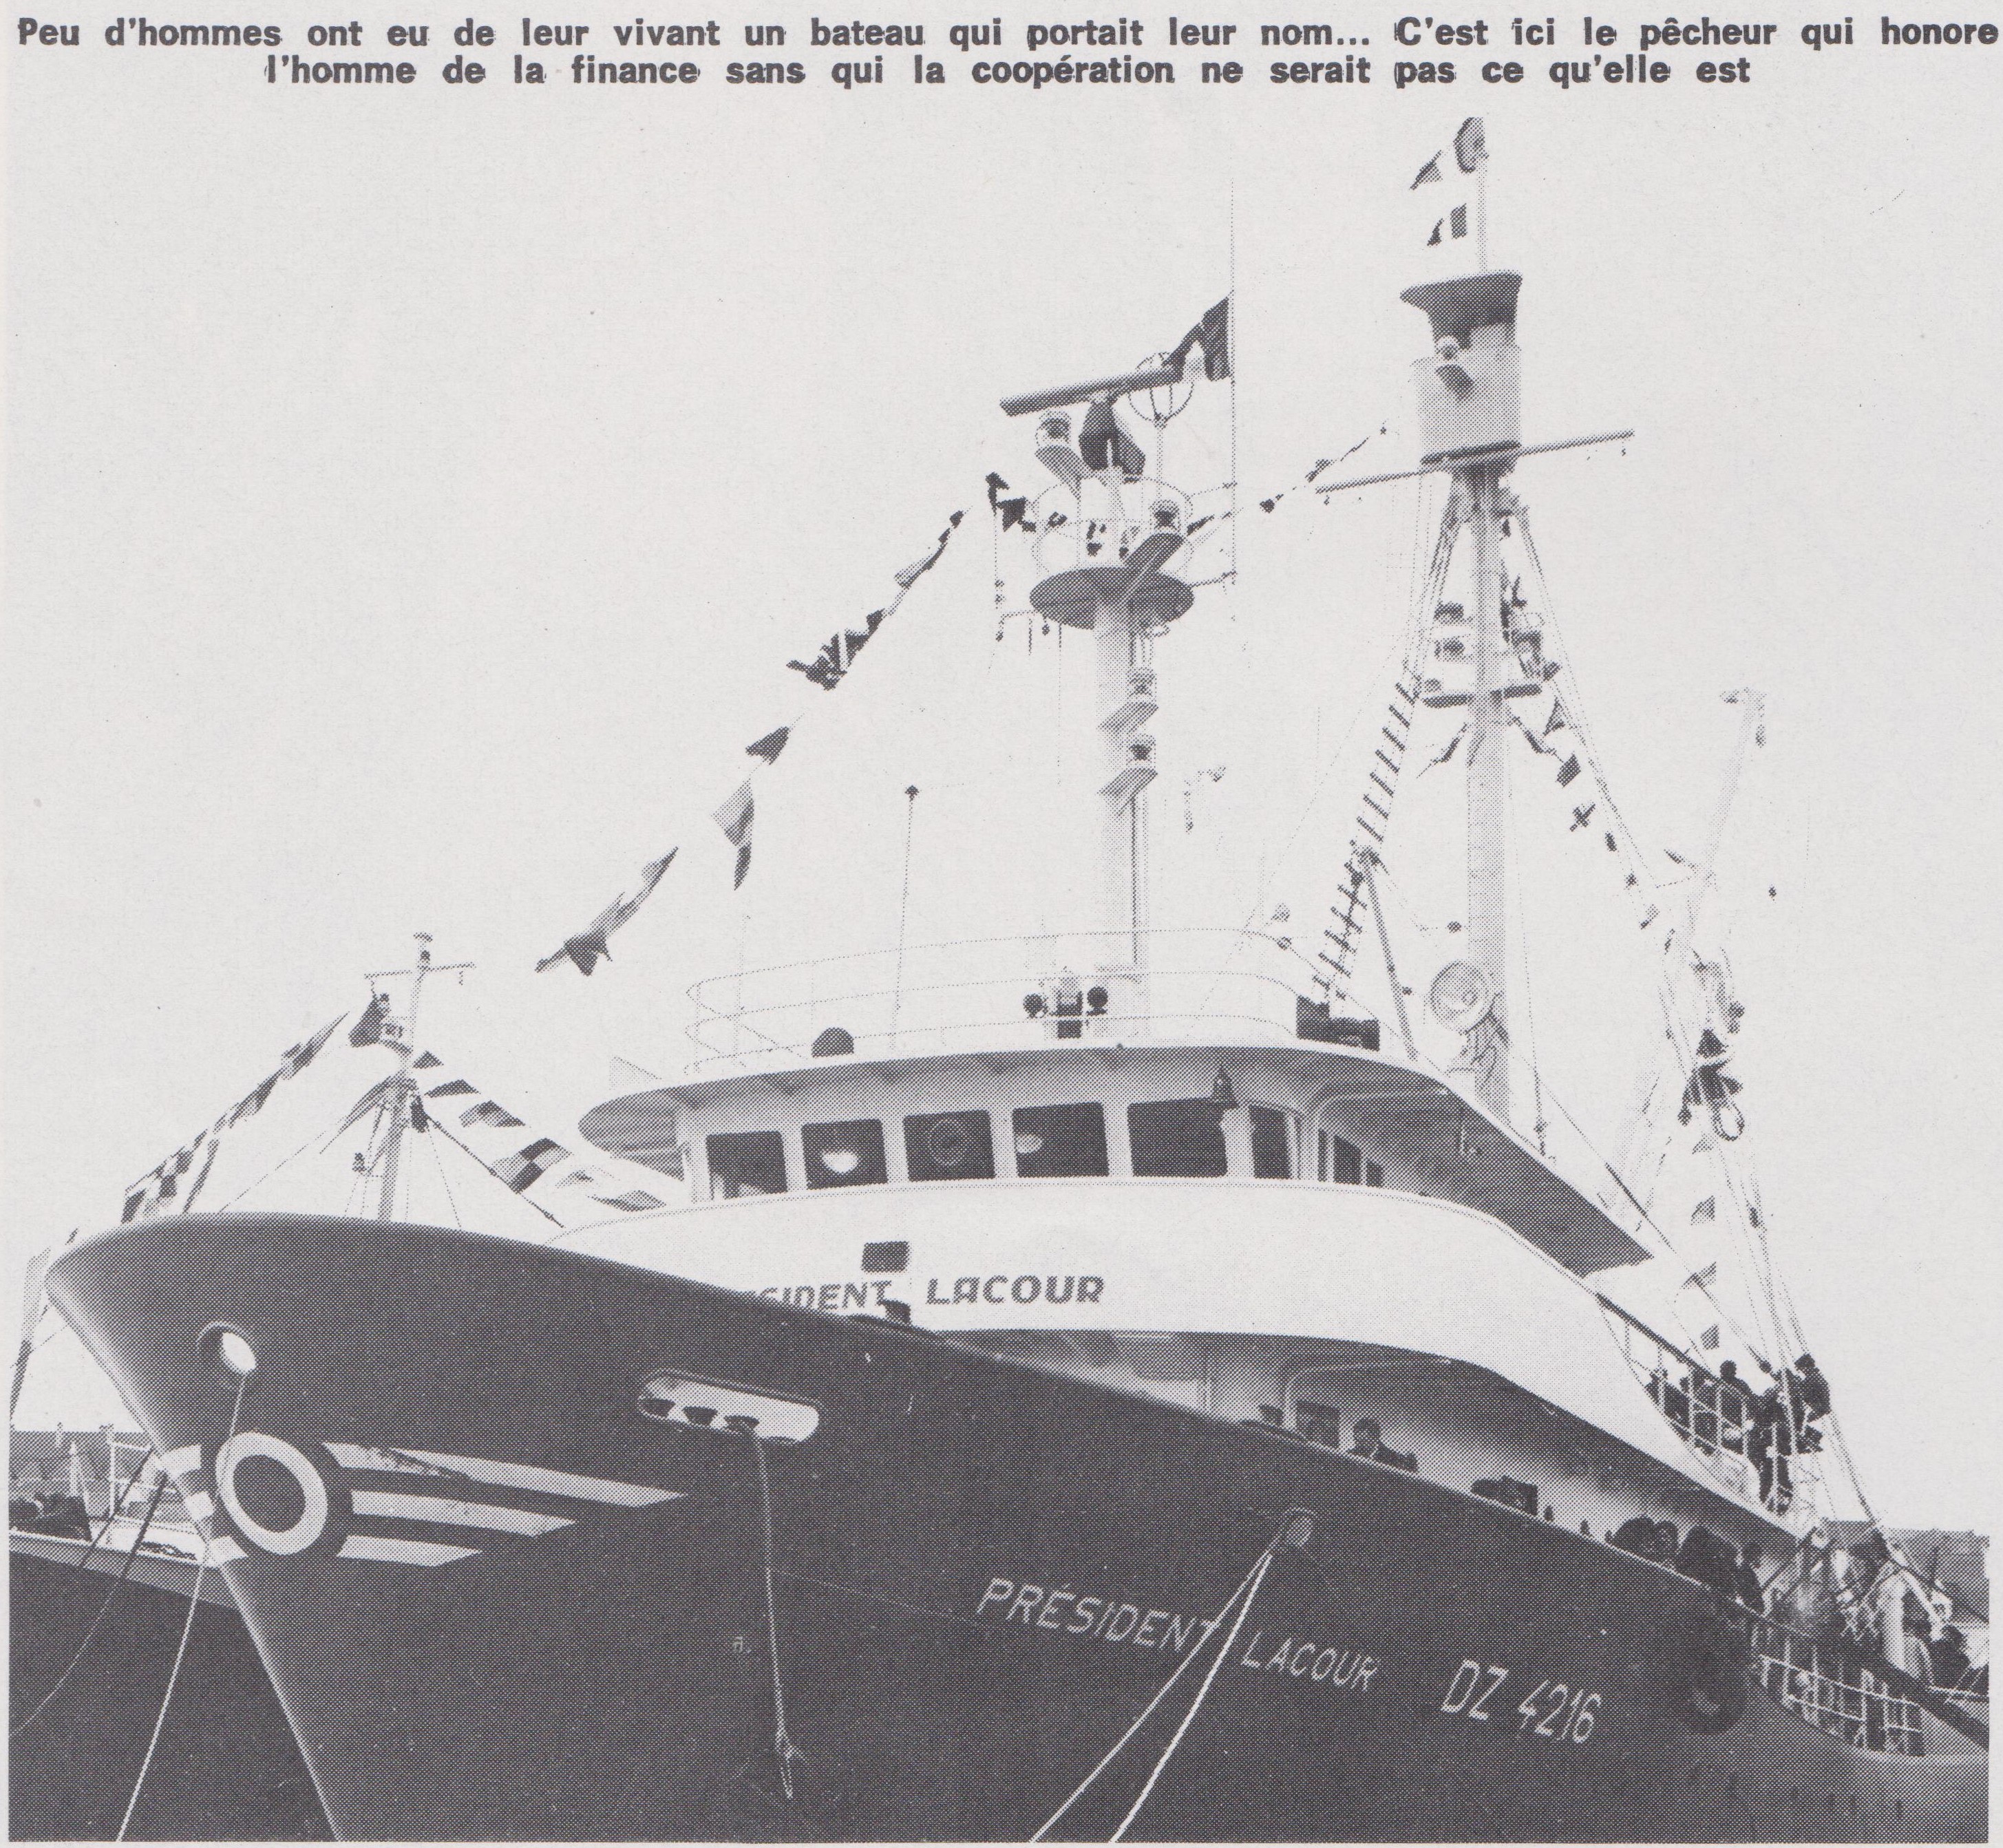 Source : Revue FRANCE pêche n° 186 de Déc 73-Janv 74 - Archives Philippe Urvois